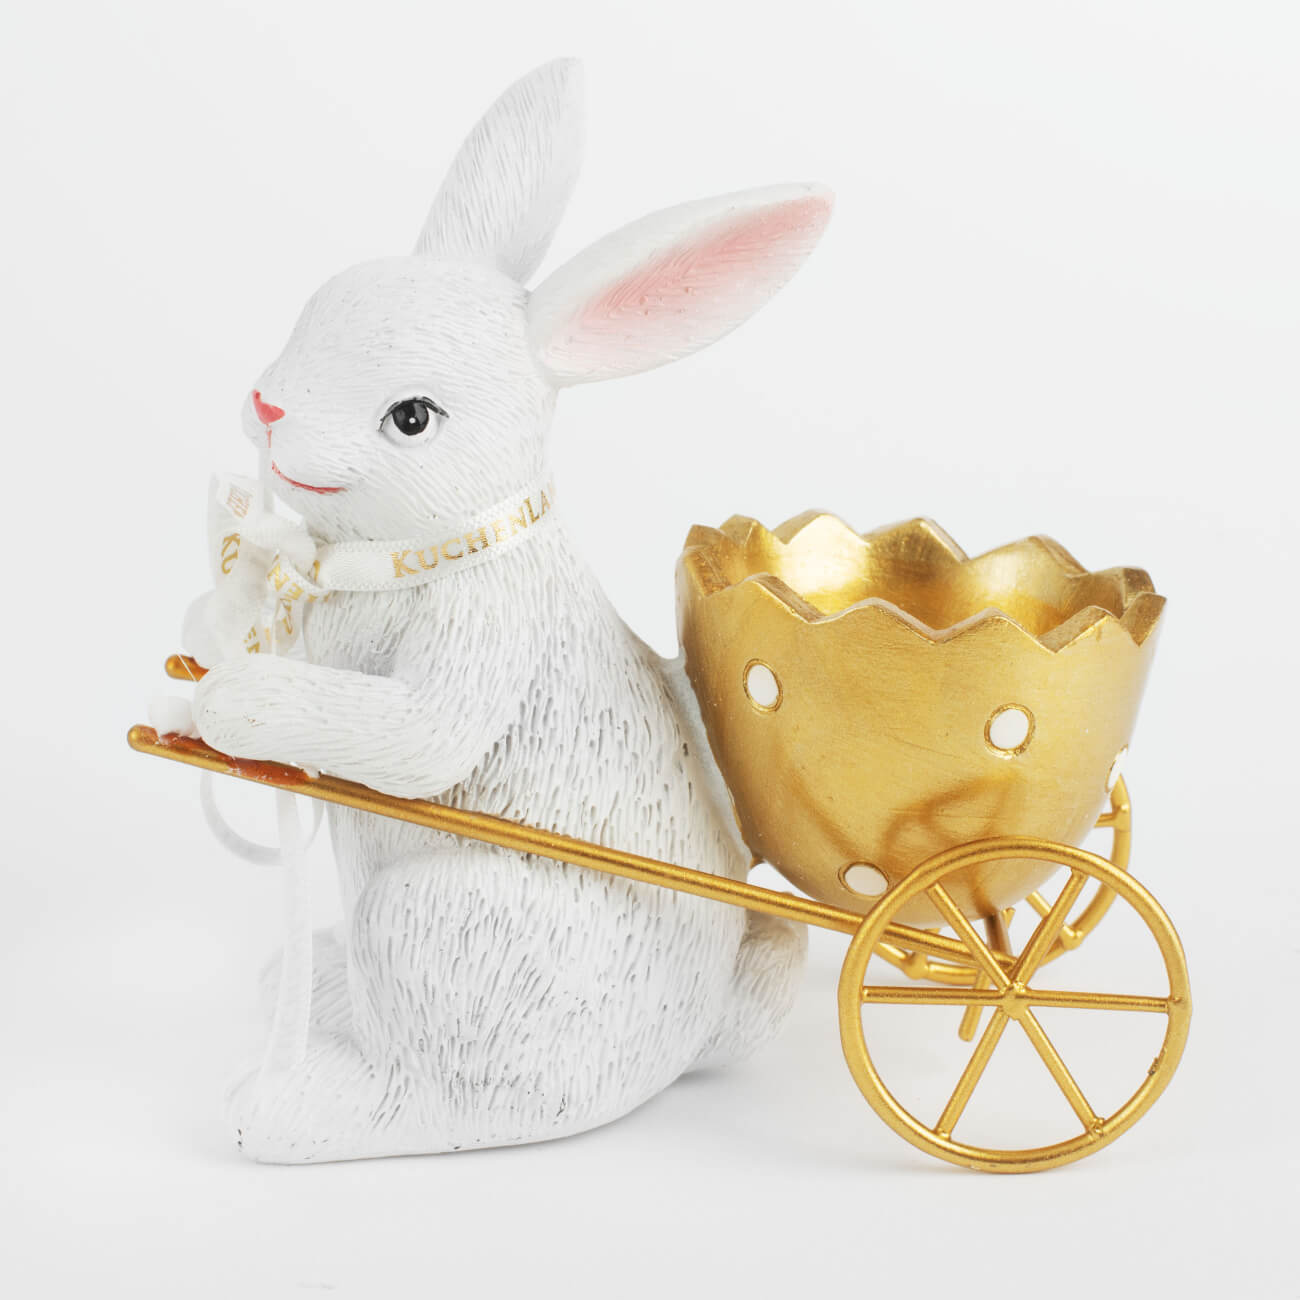 Подставка для яйца, 12 см, полирезин, бело-золотистая, Кролик с тележкой, Easter gold подставка для яйца 3 отд 21х10 см керамика бело золотистая кролики easter gold